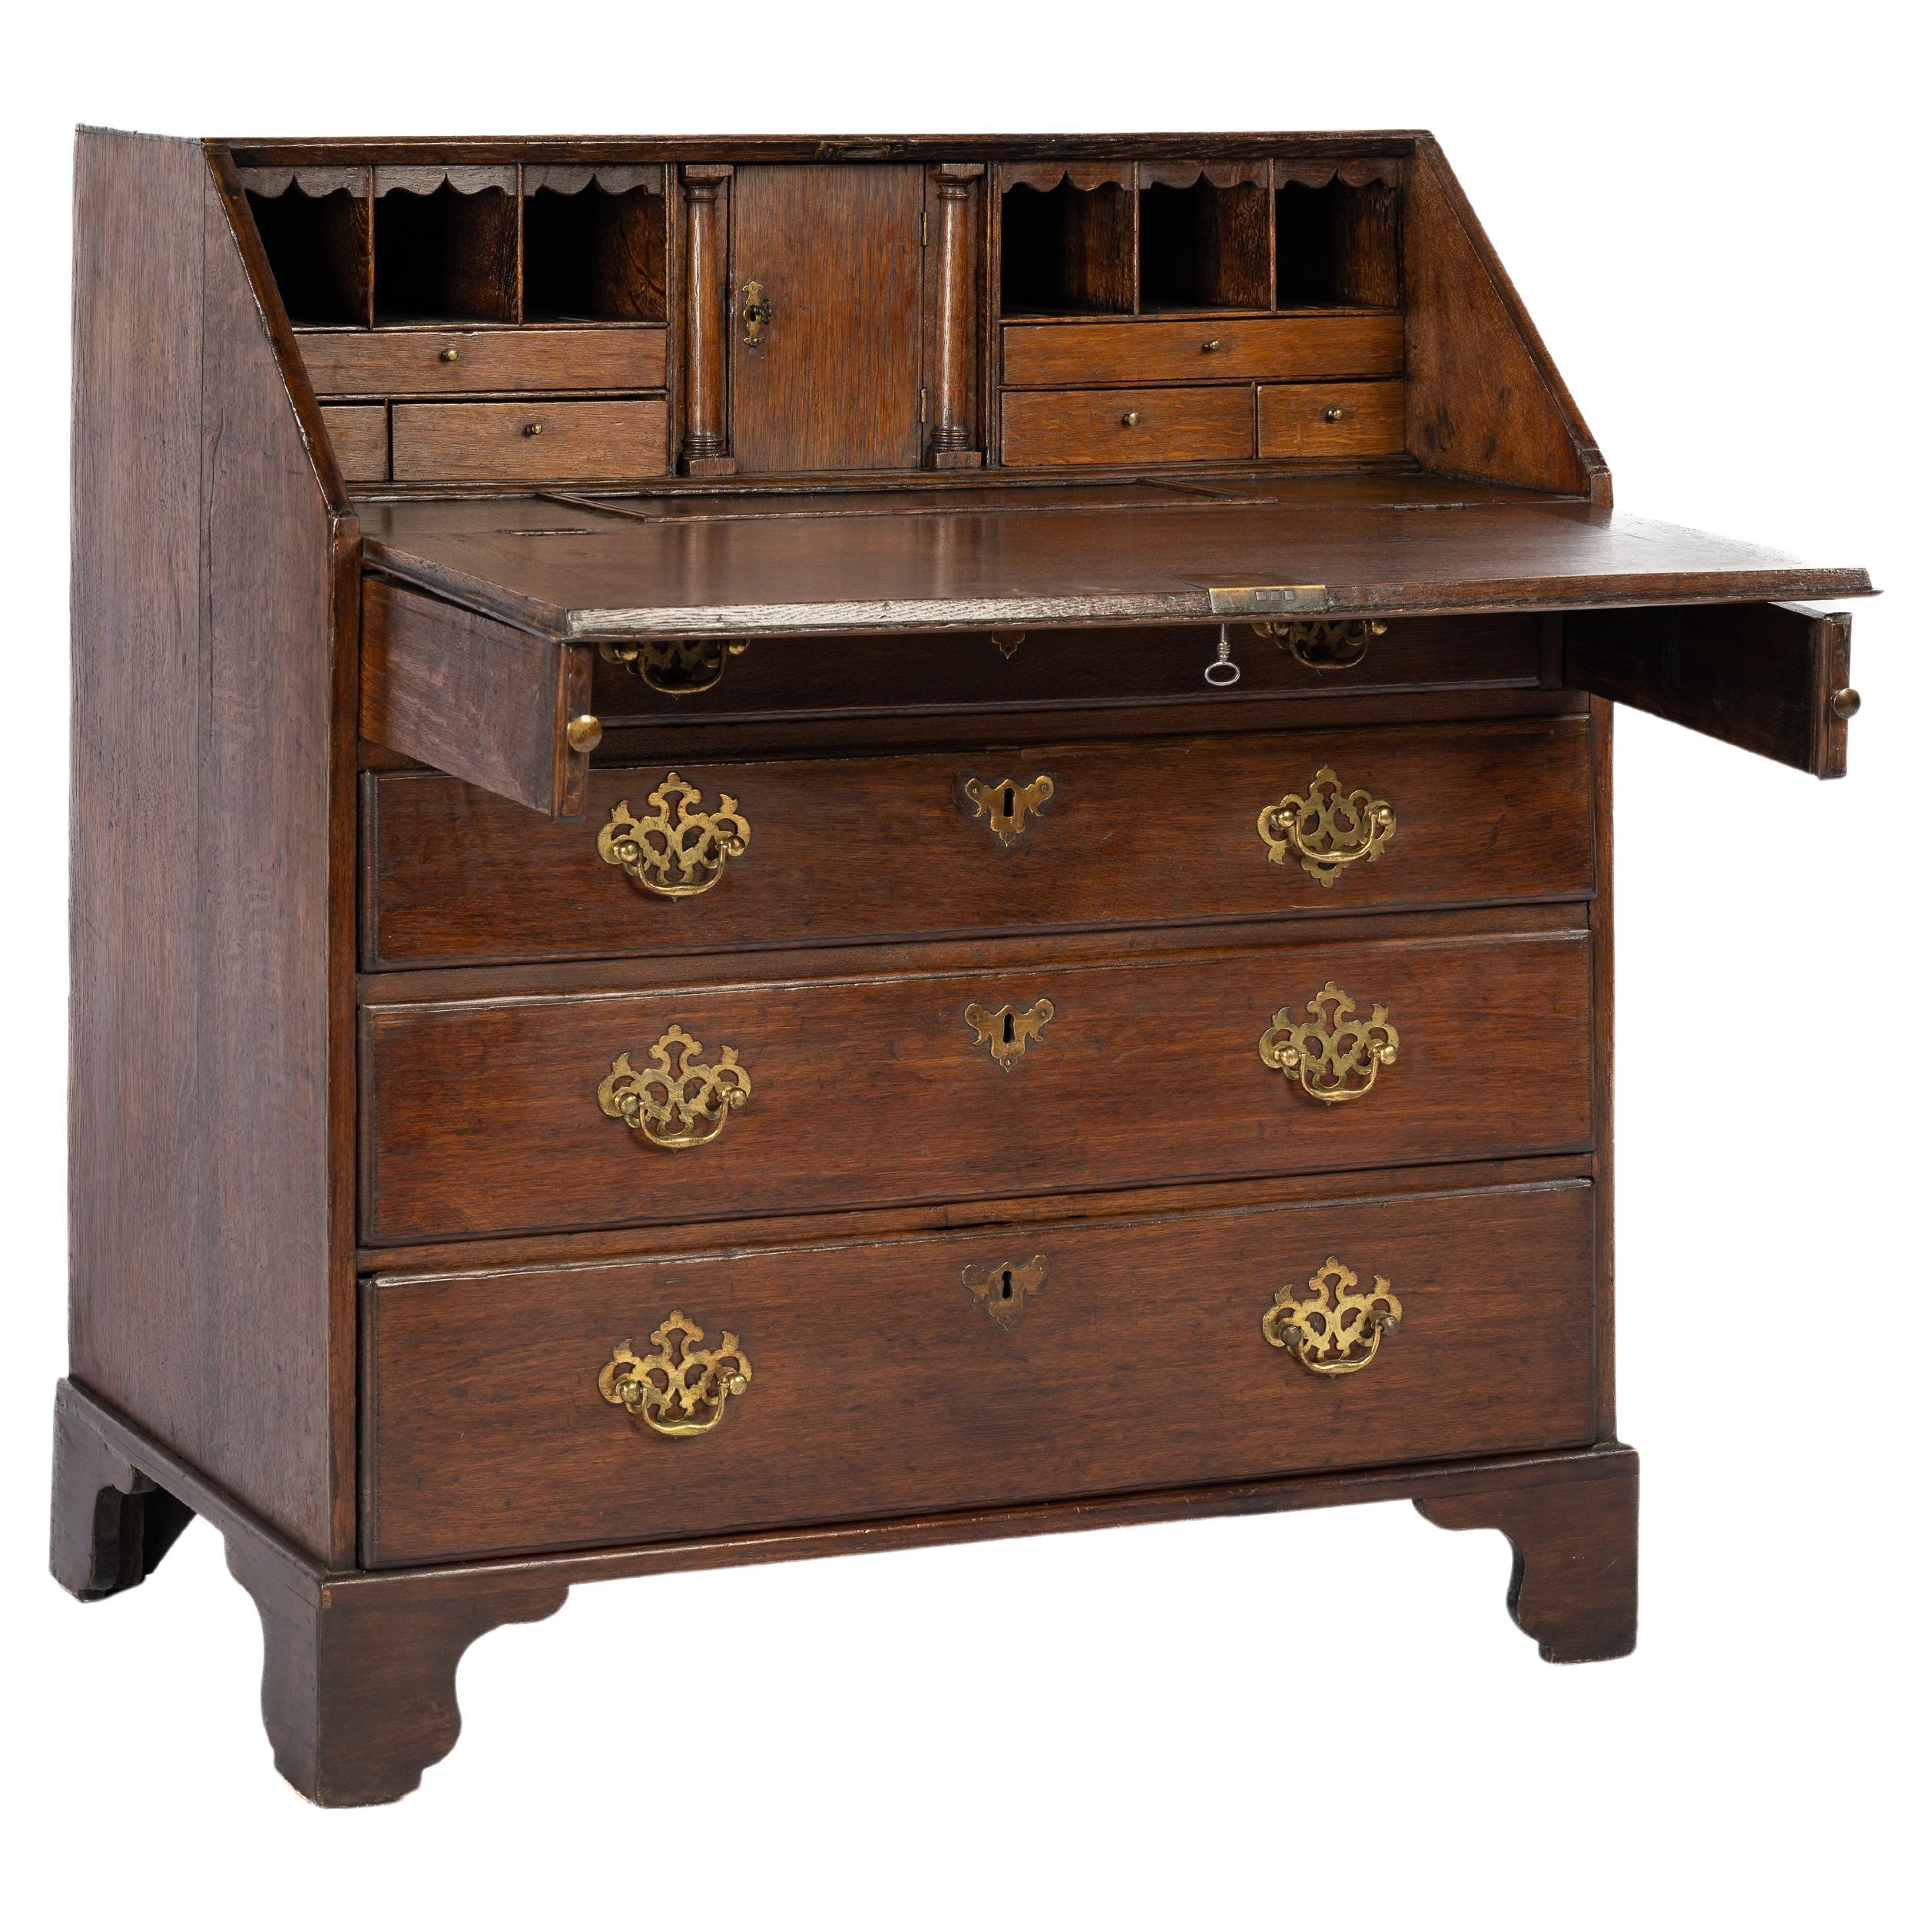 Antique 18th century warm brown English Oak Queen Anne Slant-Front Desk